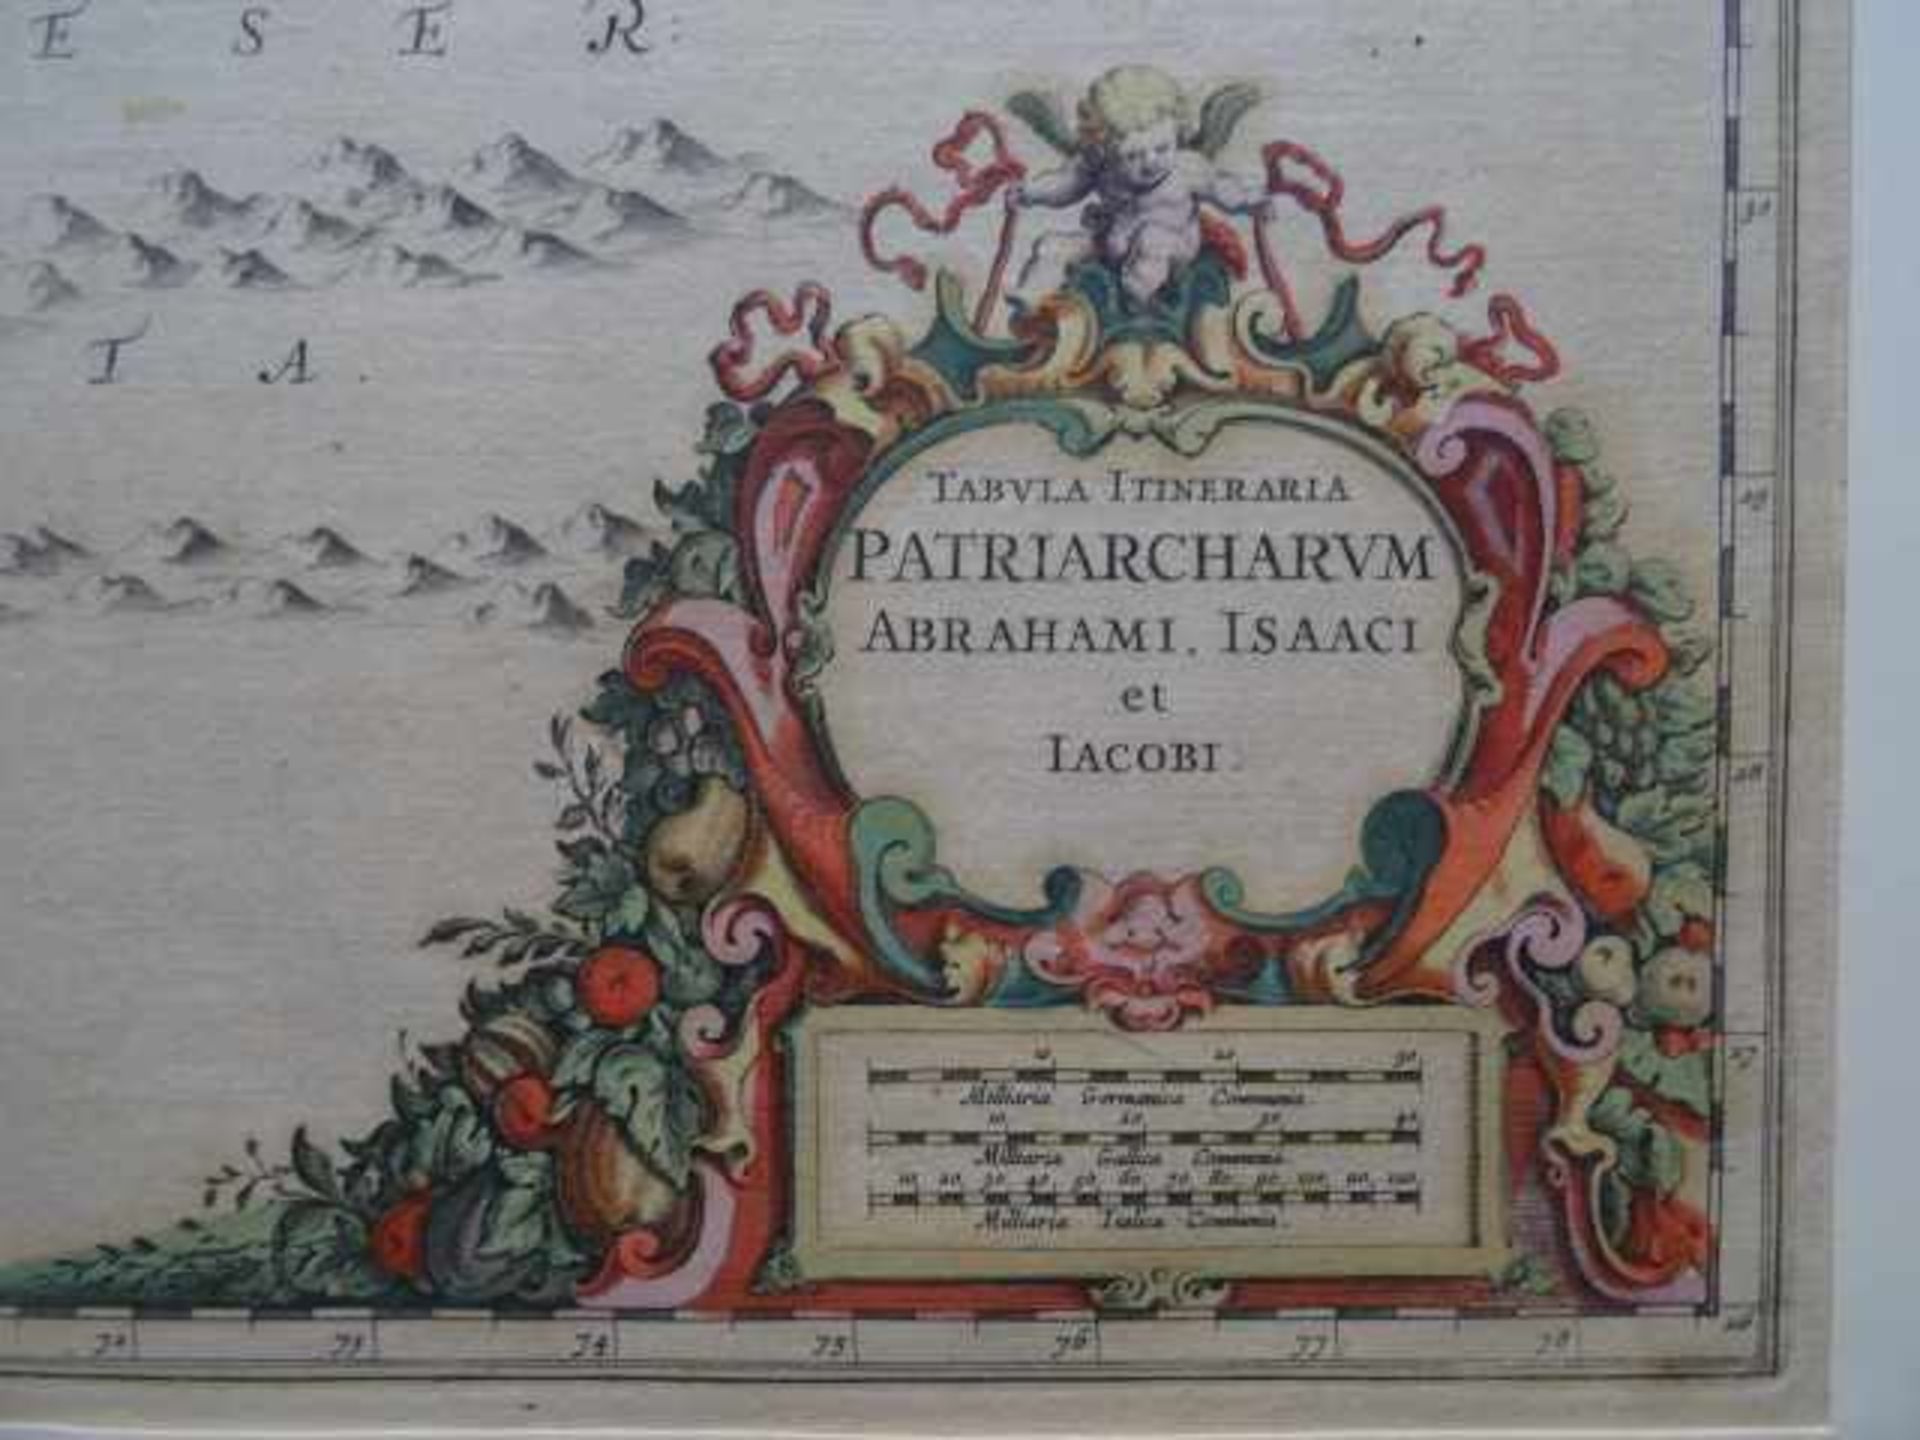 Vorderasien.- Tabula Itineraria Patriarchiarum Abrahami, Isaaci et Iacobi. Altkolor. - Bild 2 aus 4